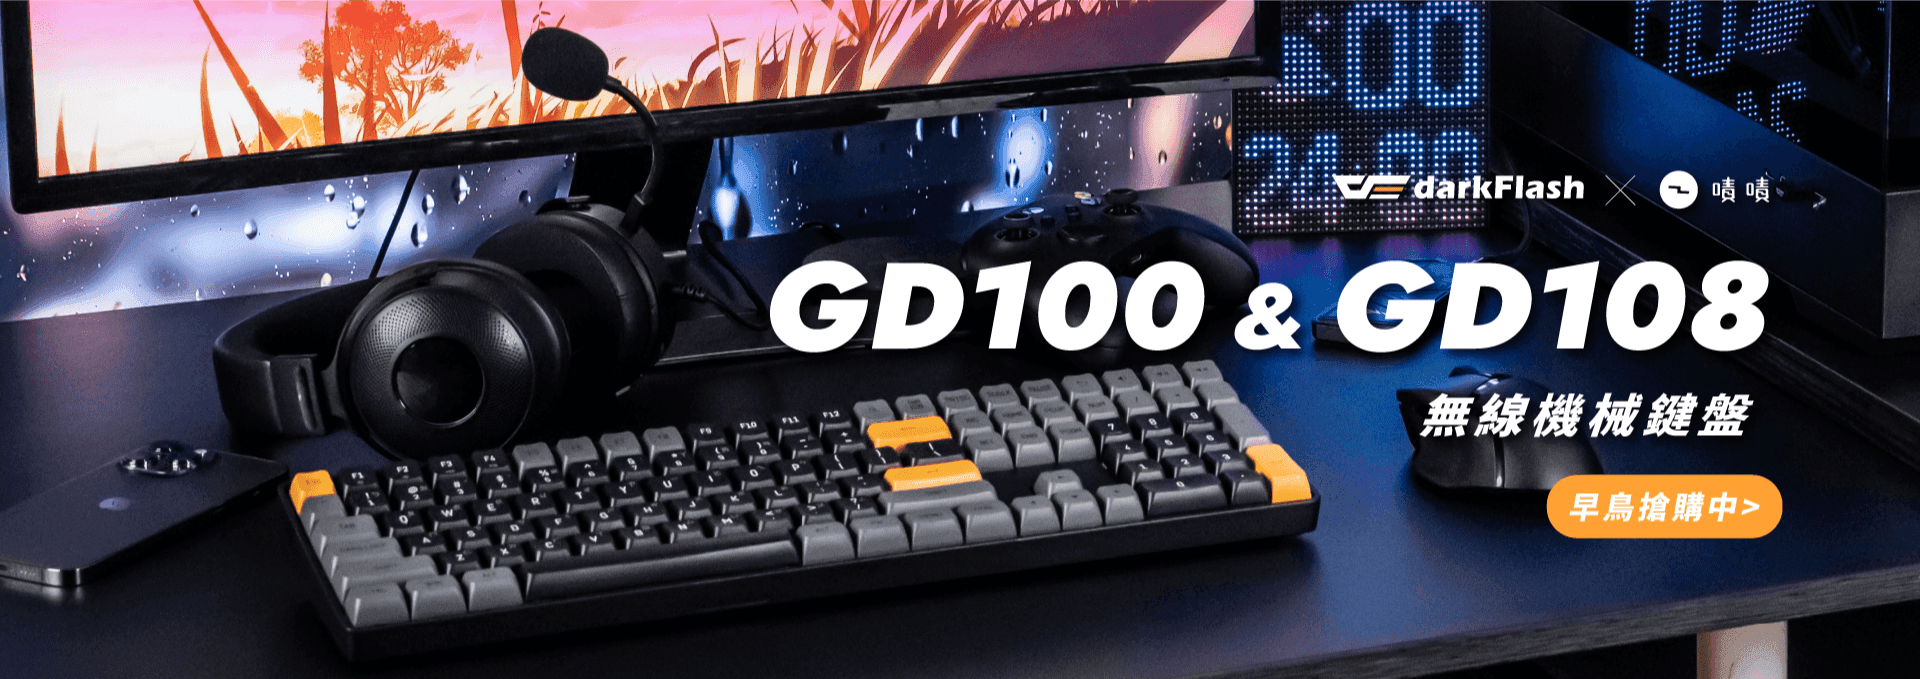 嘖嘖 | 【GD100 / GD108 機械式鍵盤】雙模式切換、超強續航、復古撞色設計